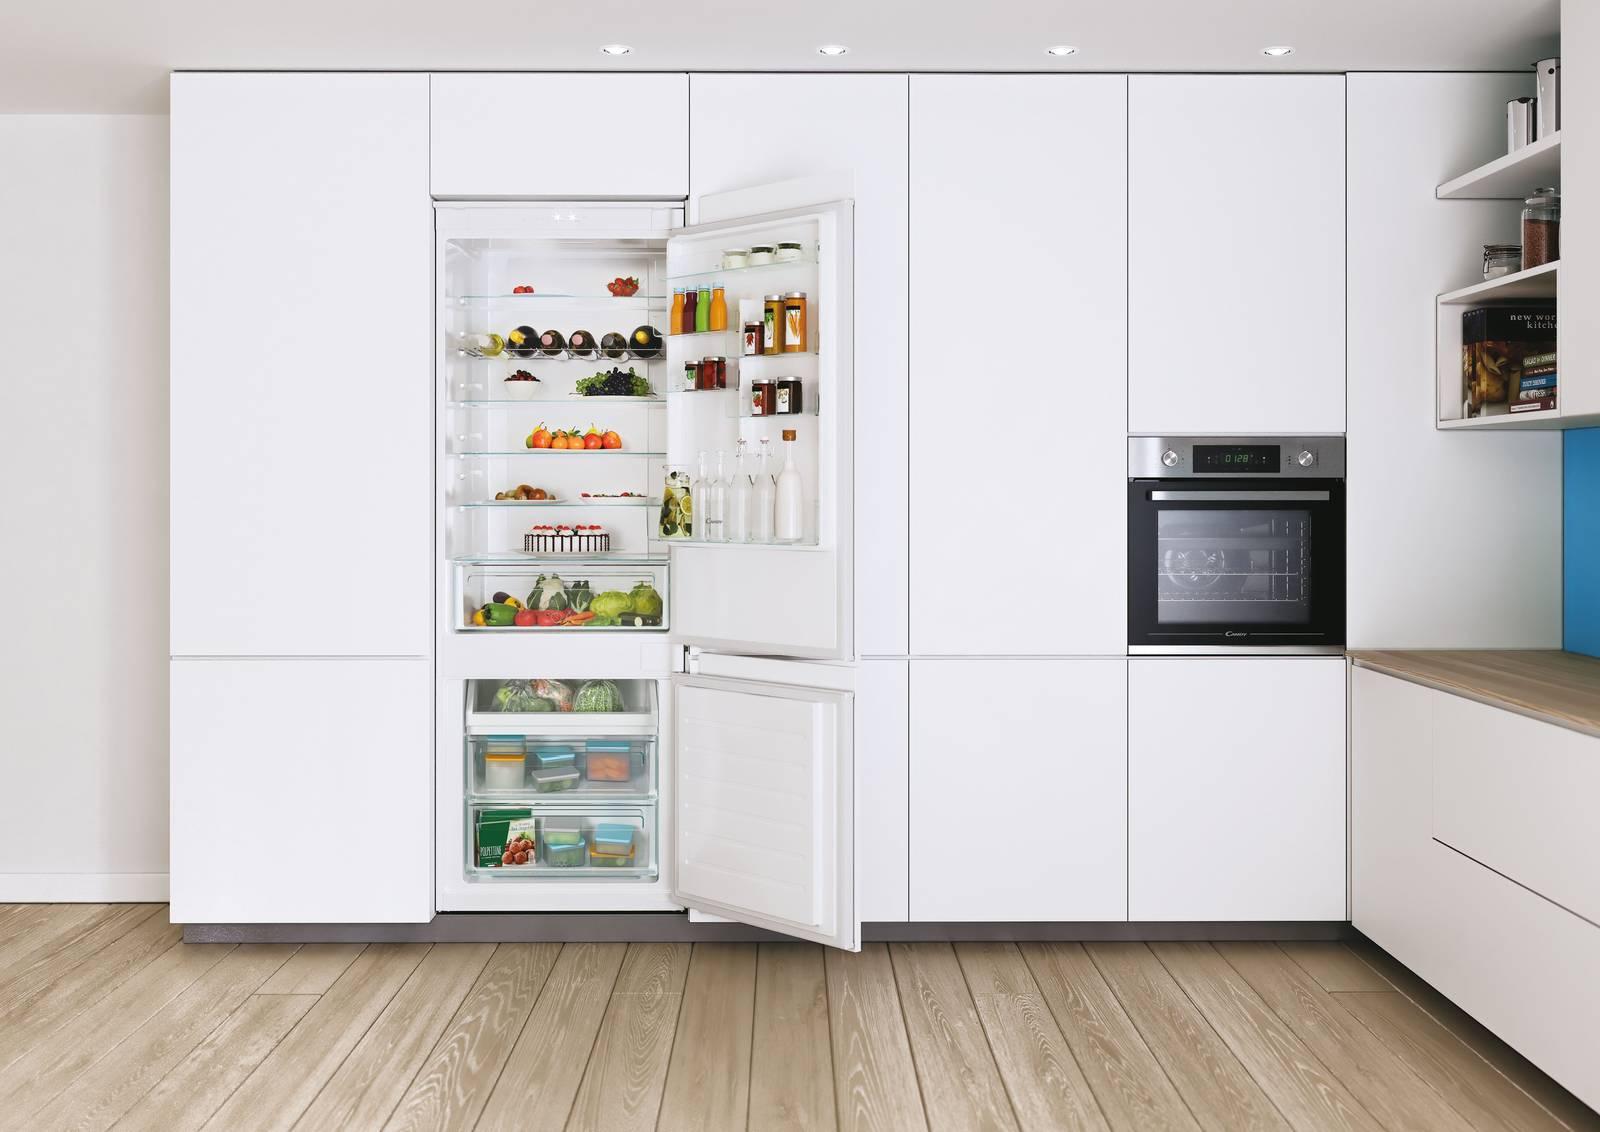 Puoi utilizzare un frigorifero senza griglia anteriore?